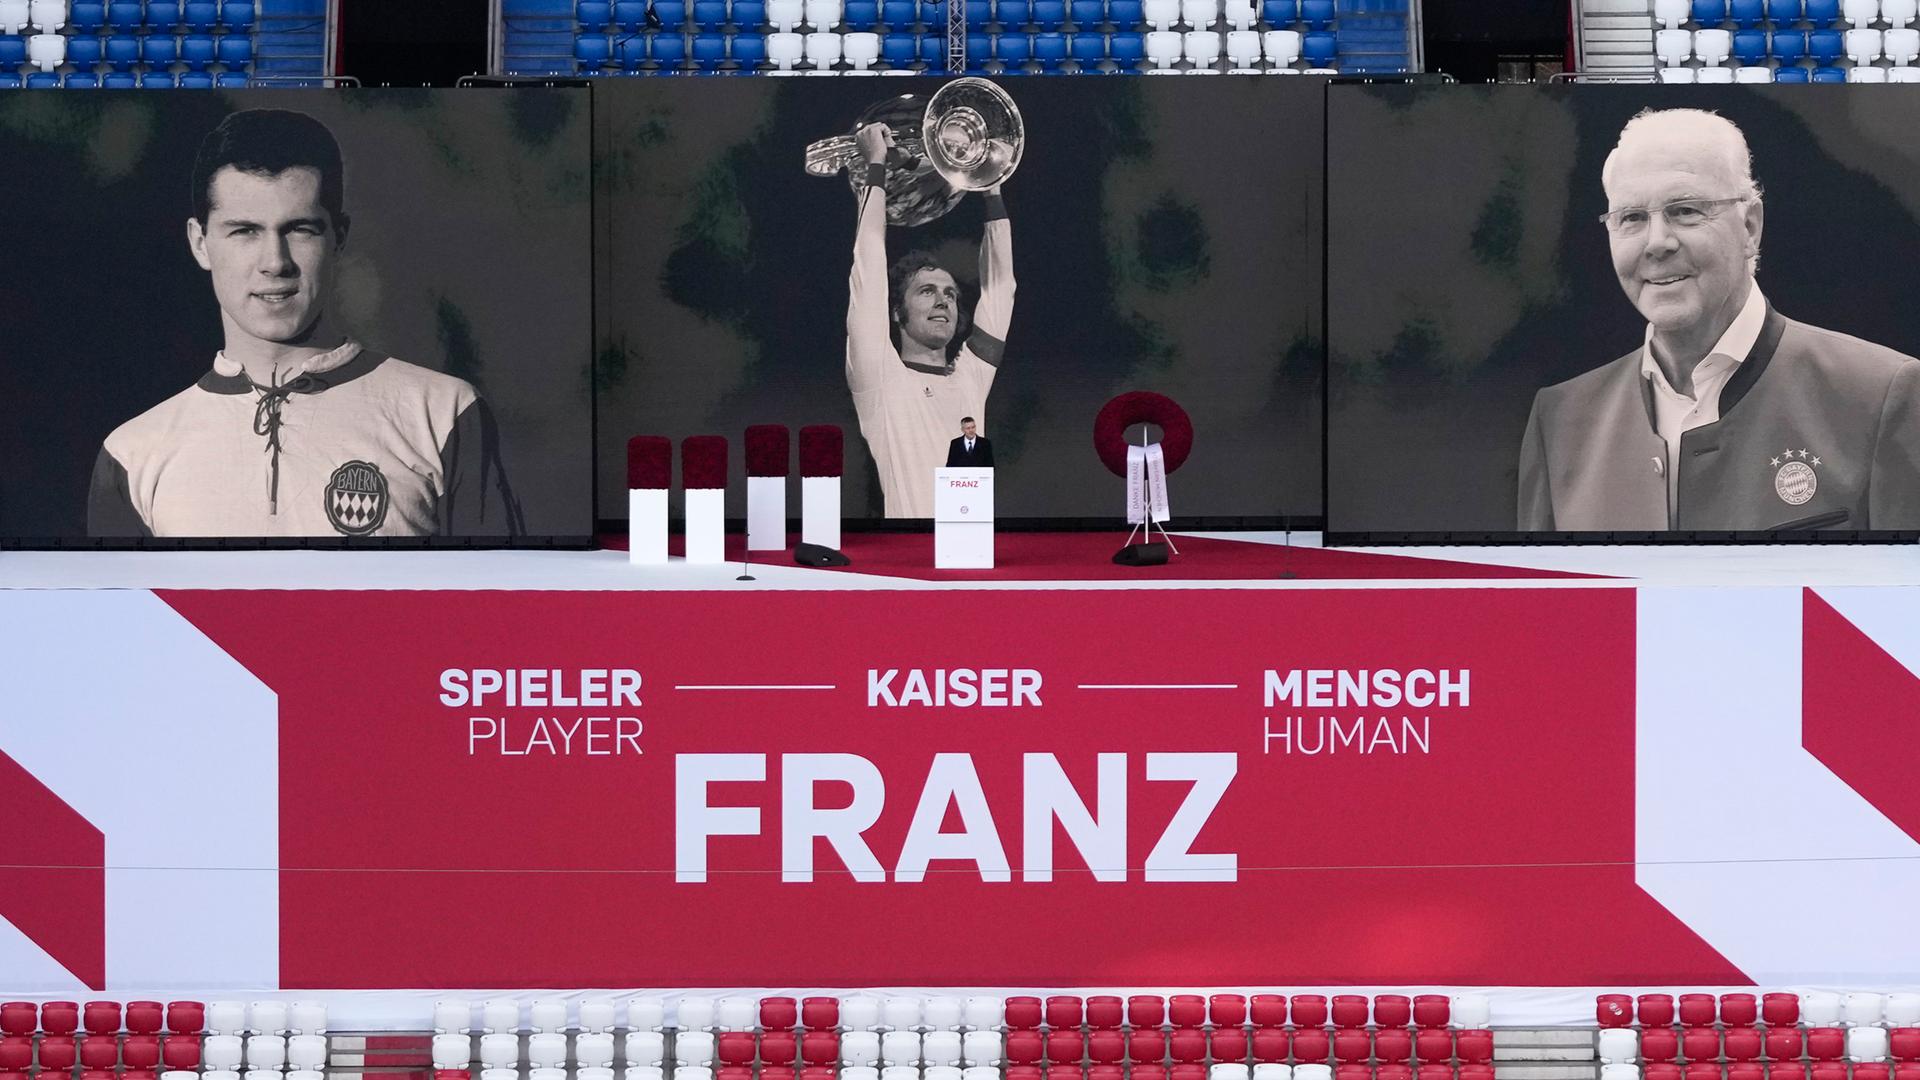 Über dem Schriftzug "Spieler - Kaiser - Mensch FRANZ" prangen Schwarz-Weiß-Fotos von Franz Beckenbauer aus verschiedenen Phasen seines Lebens.